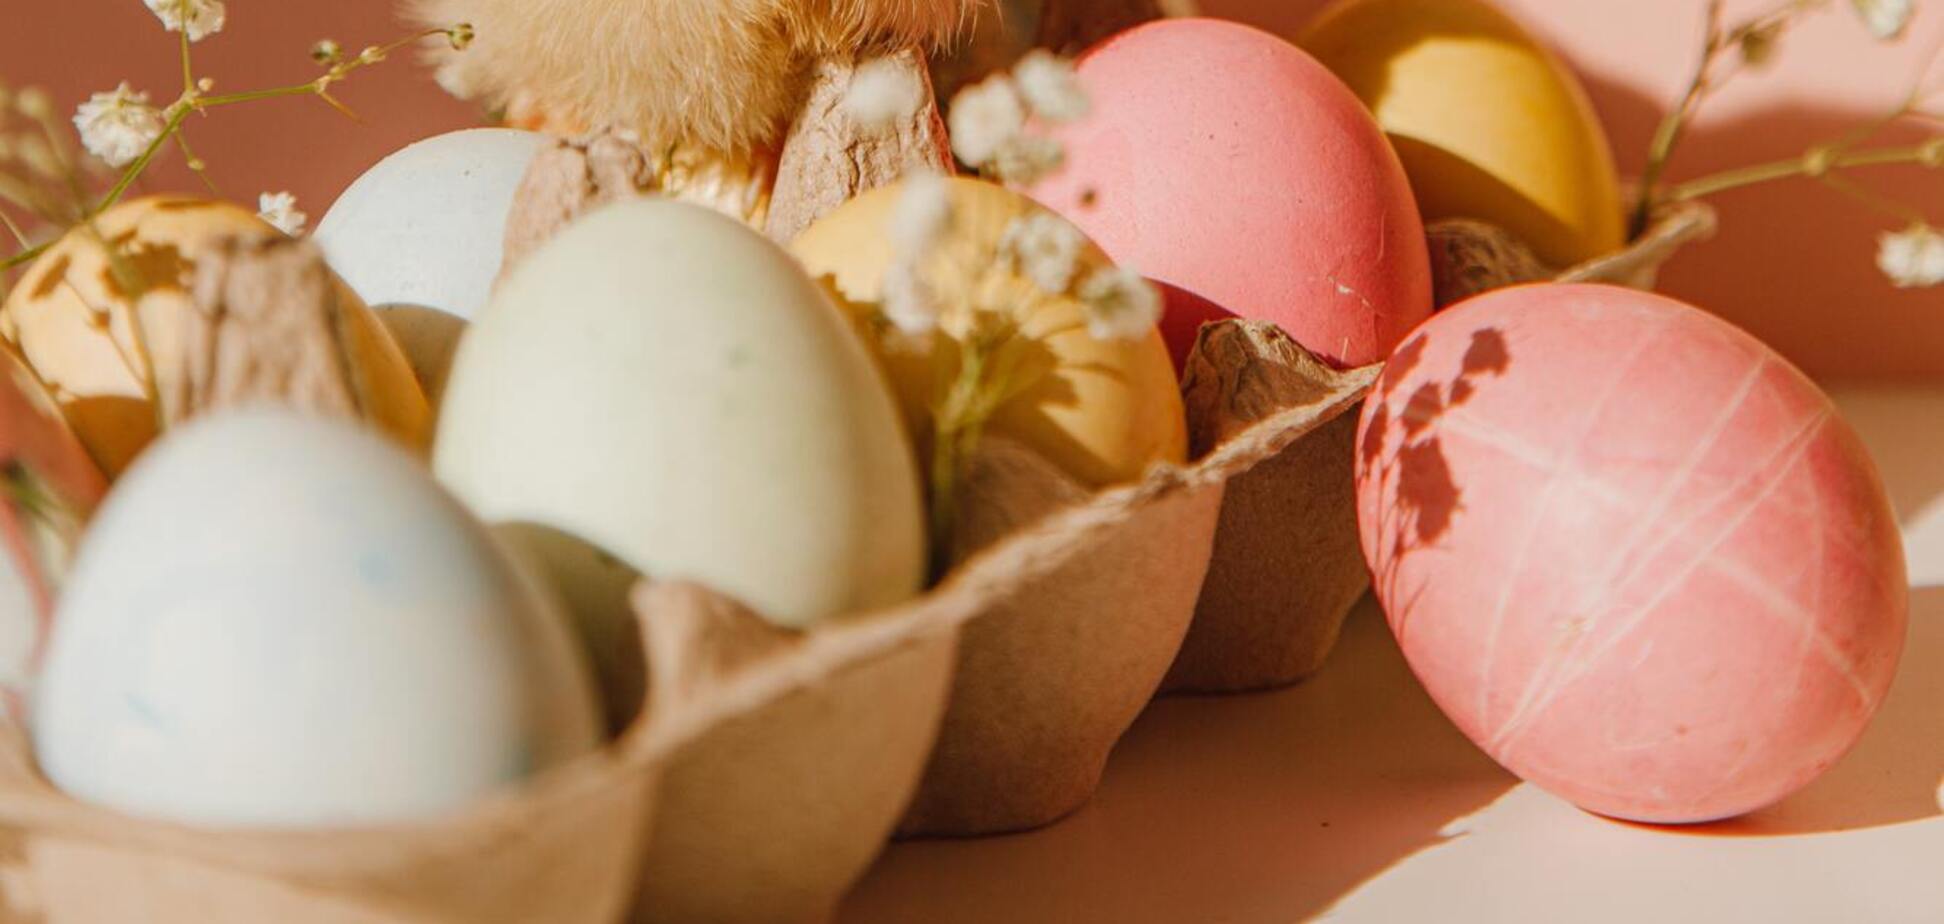 Чим категорично заборонено фарбувати яйця на Великдень: цими барвниками можна отруїтися 